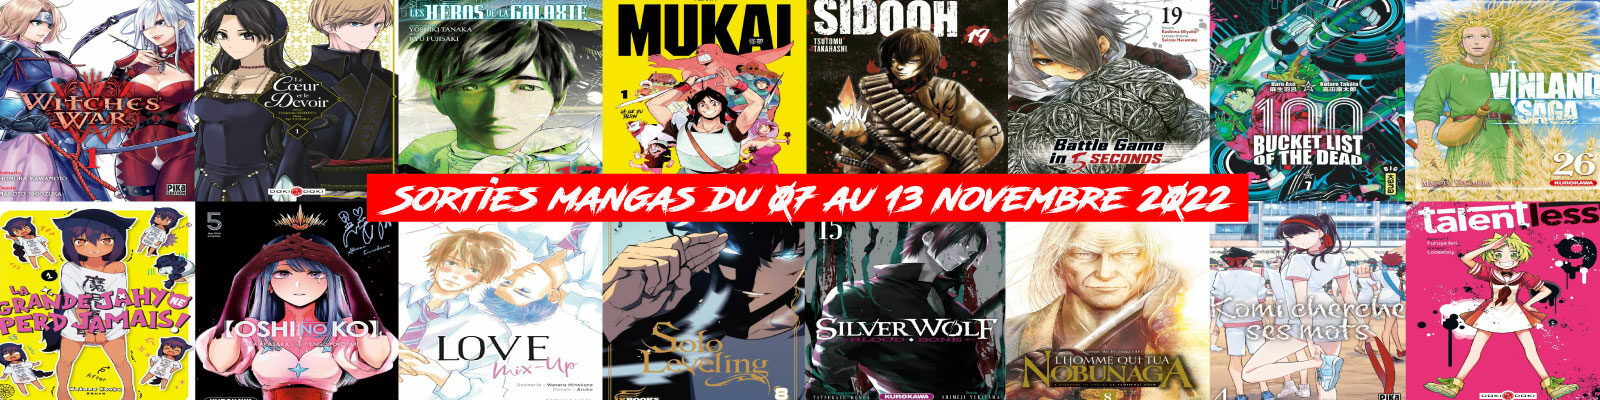 Sorties mangas-du-07-au-13-novembre-2022